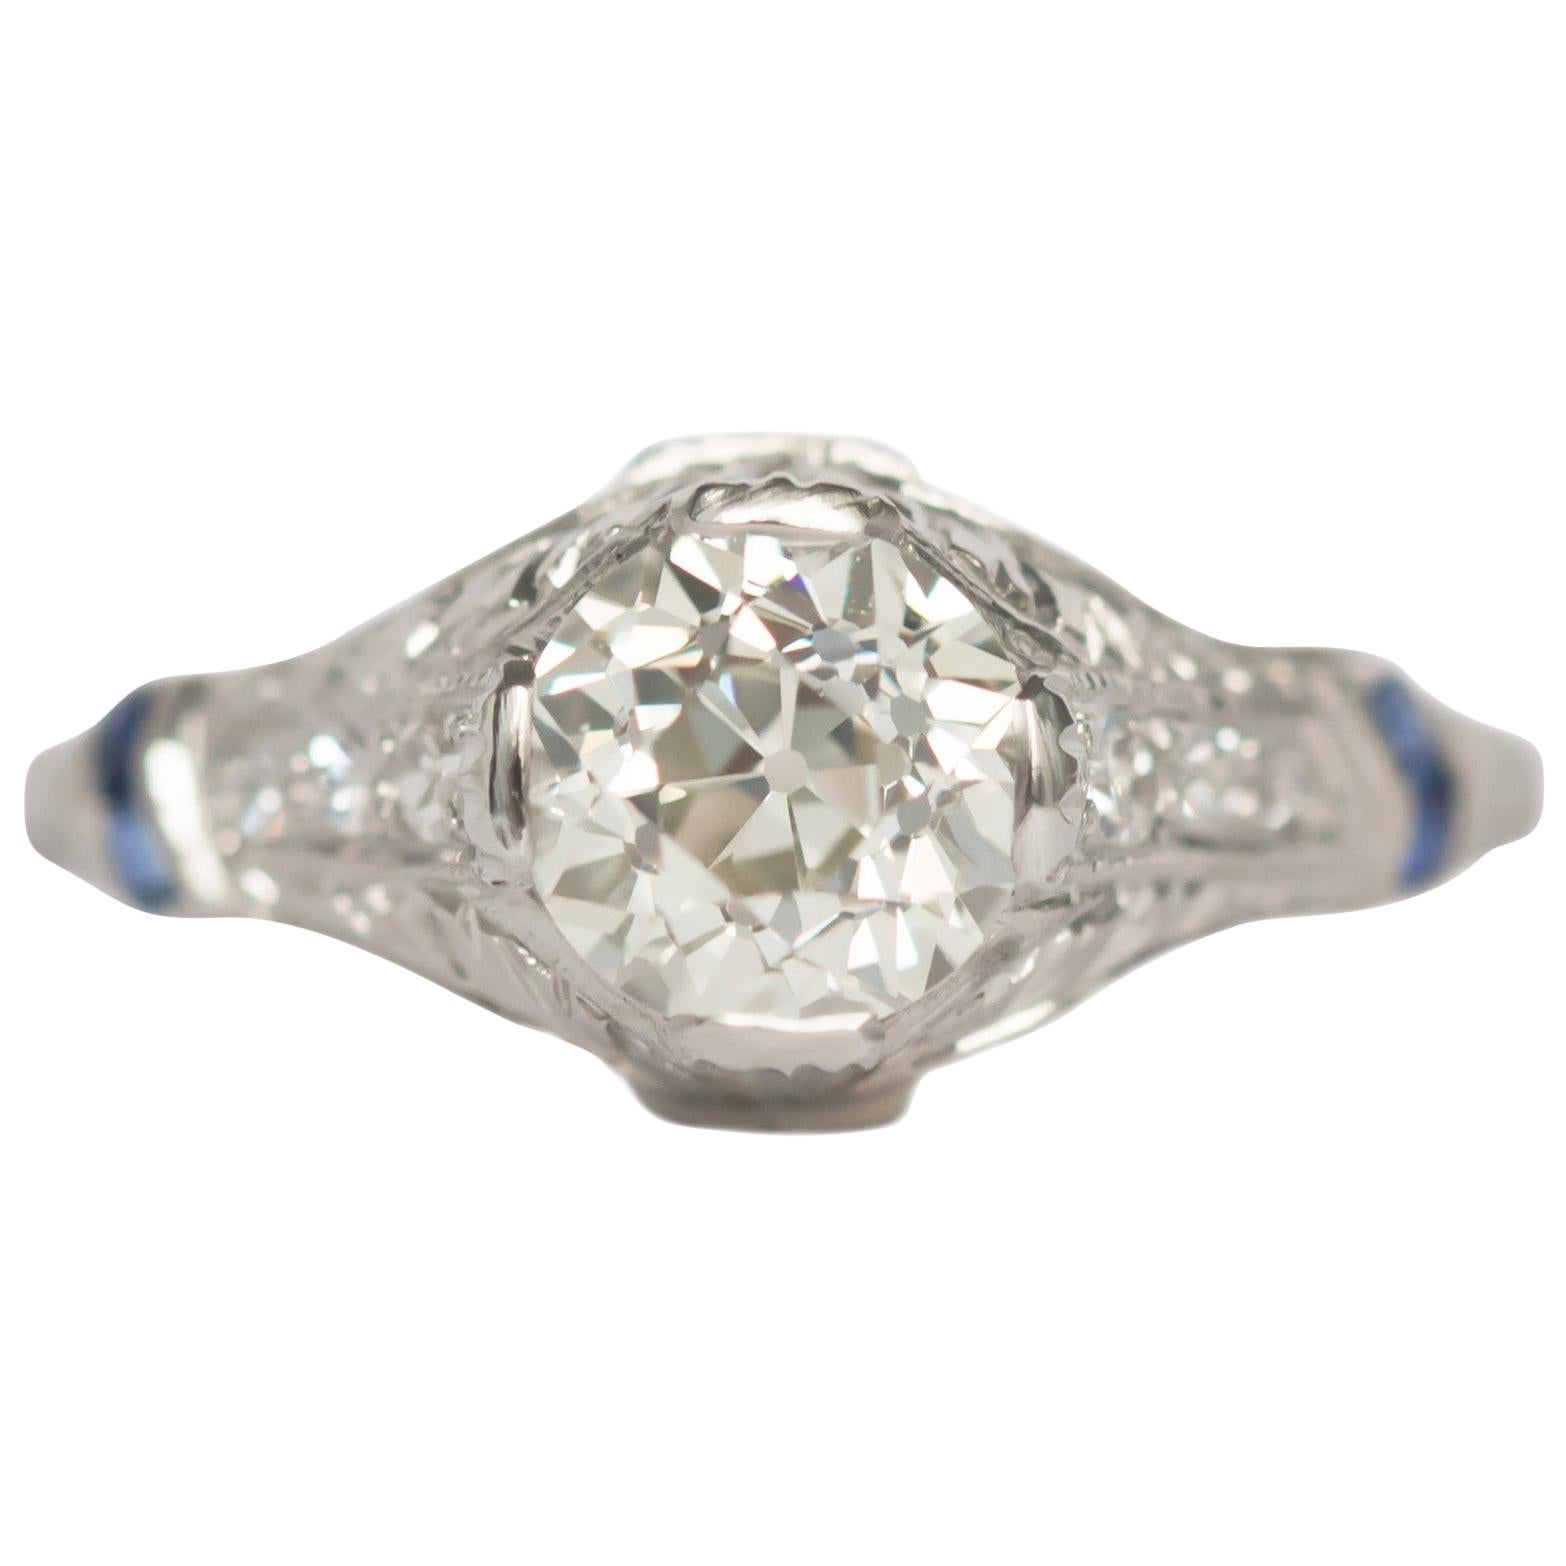 GIA Certified 1.05 Carat Diamond Platinum Engagement Ring